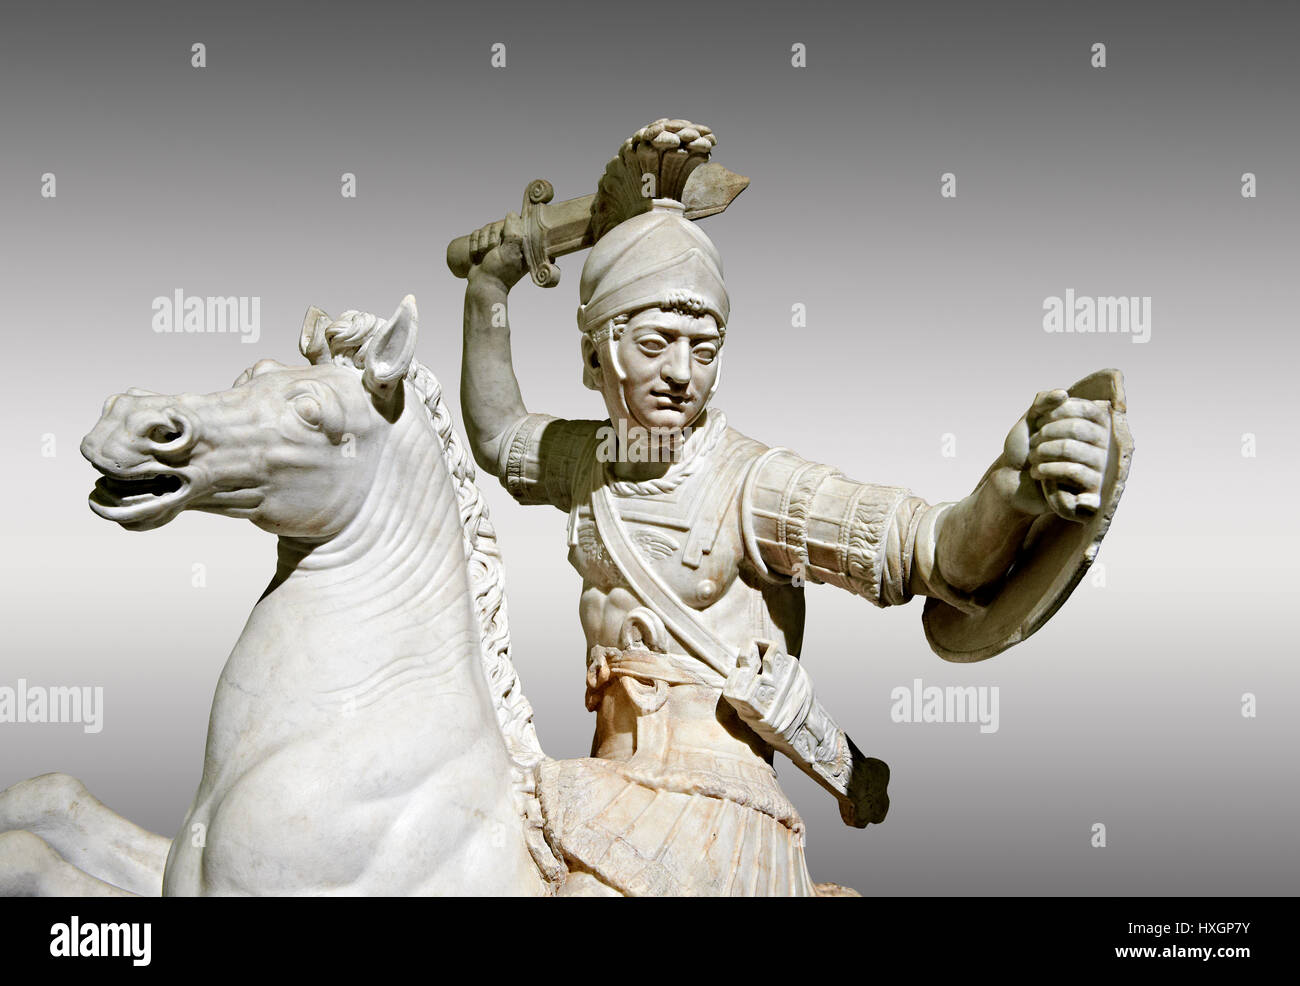 Sculpture en marbre romain d'un guerrier à cheval, un 2ème siècle AD, inv 6405, Musée National d'Archéologie de Naples, Italie, fond gris Banque D'Images